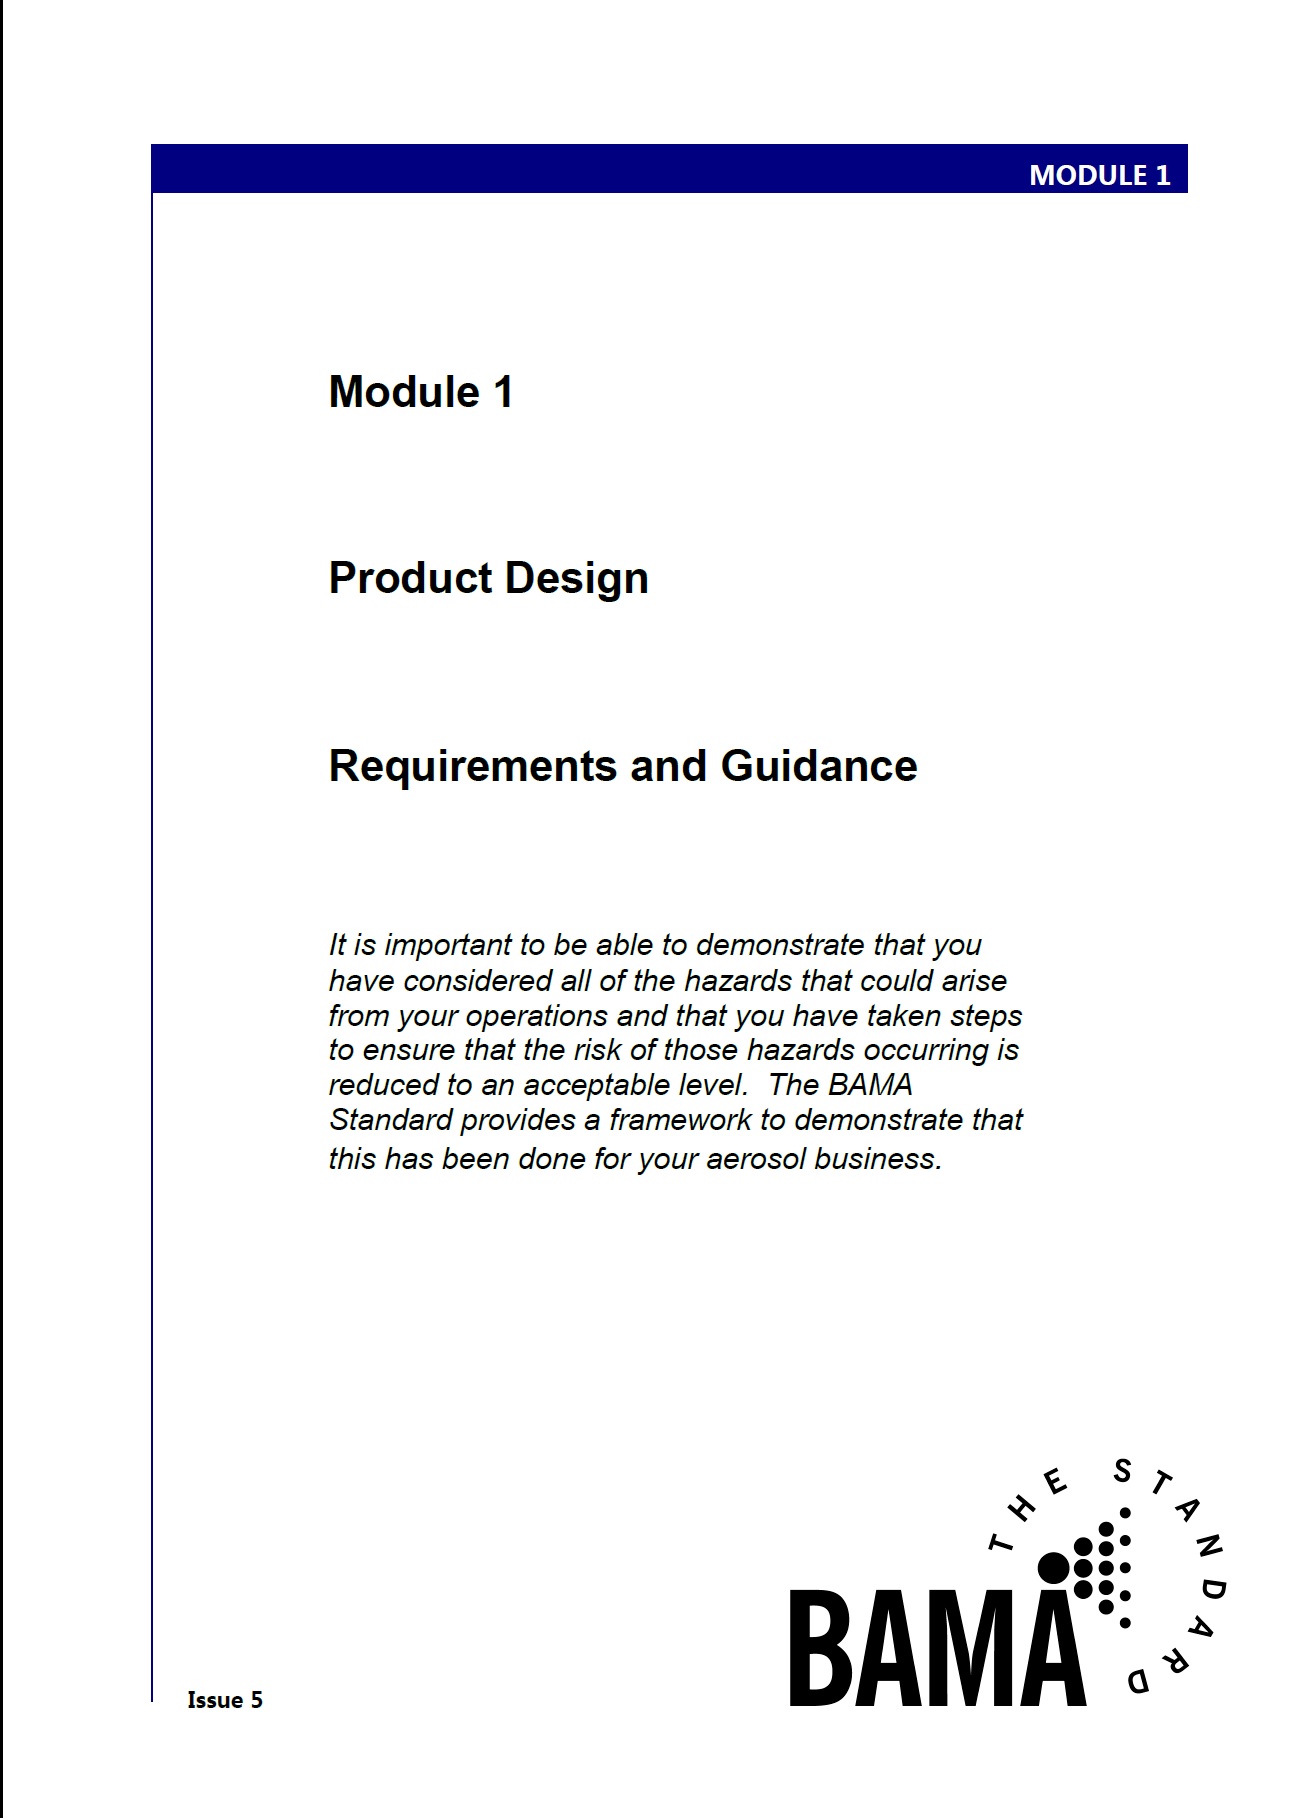 Module 1: Product Design